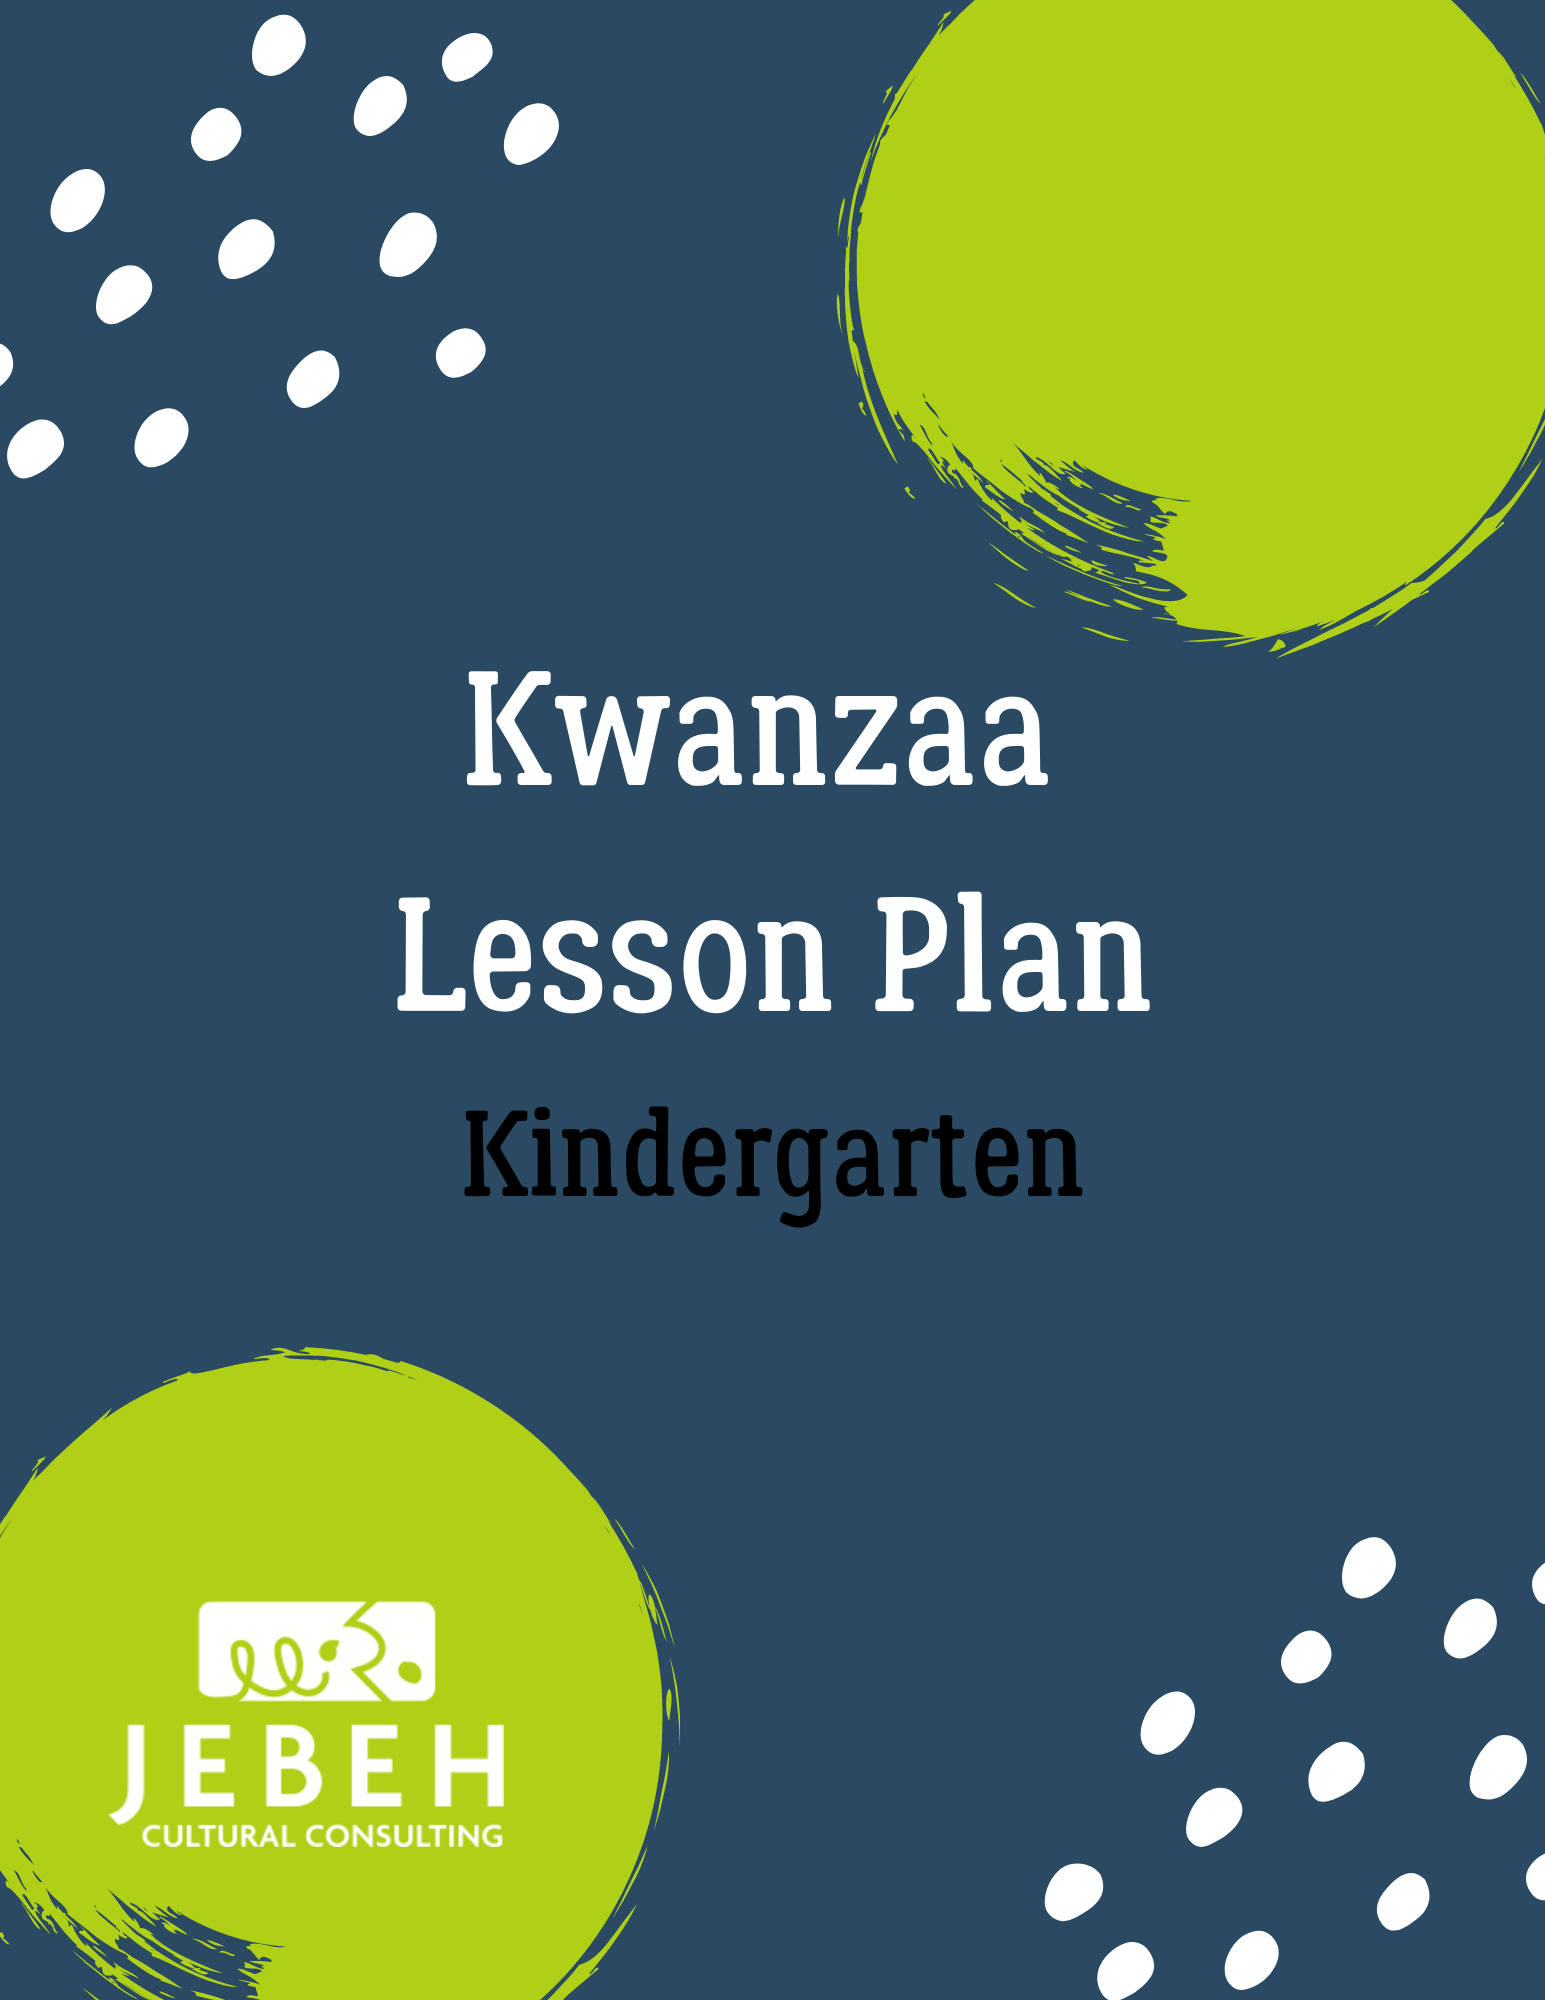 kwanzaa-lesson-plan-kindergarten-jebeh-edmunds